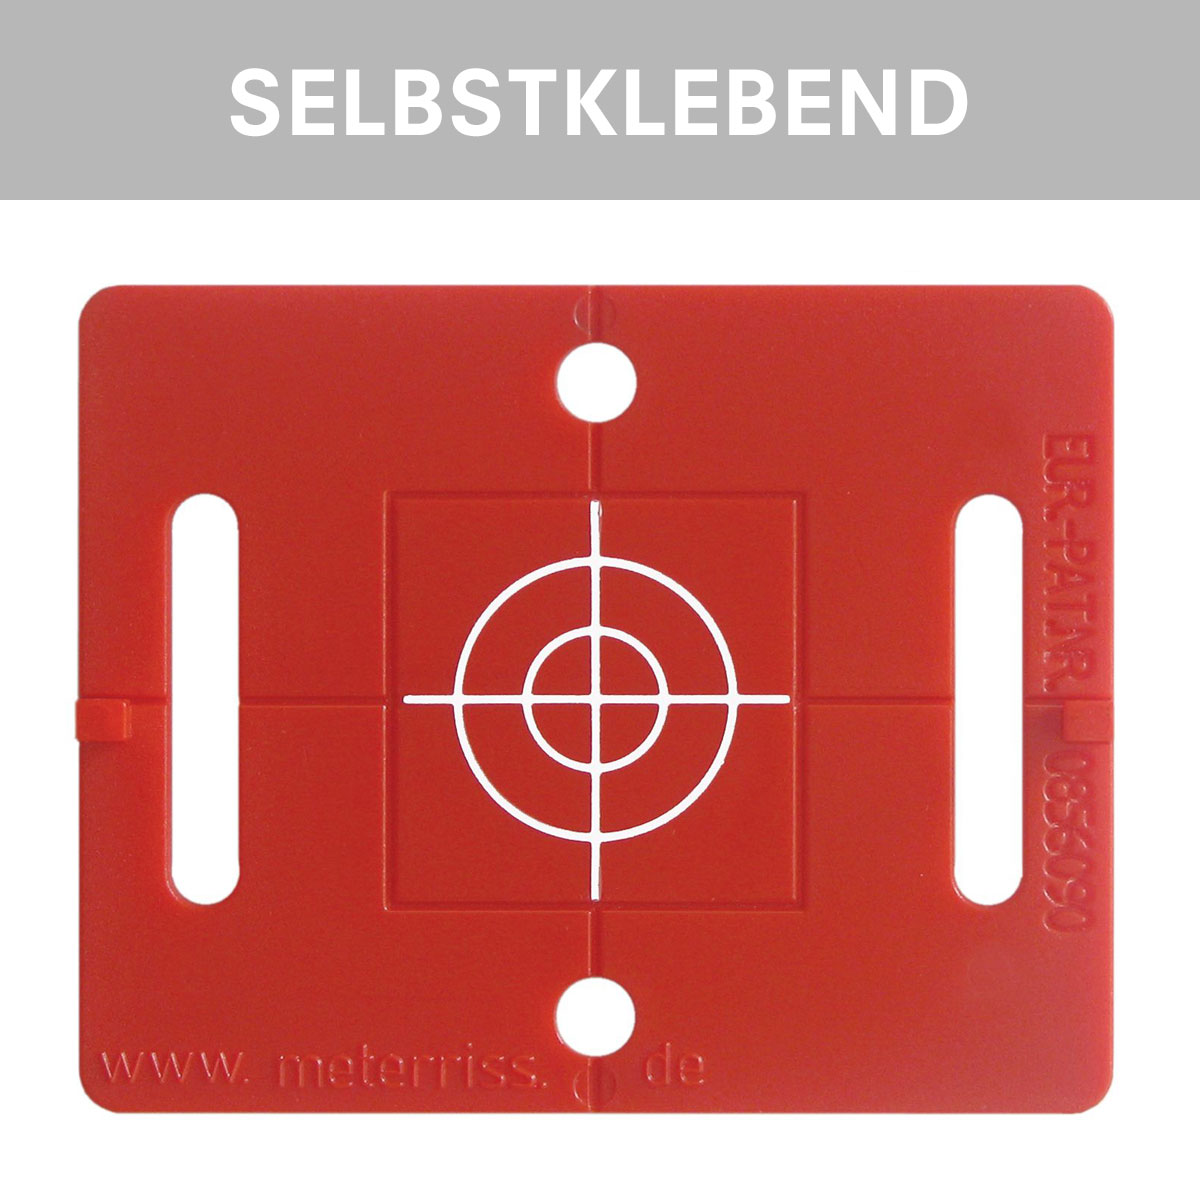 Vermessungsplakette RS 71, rot, mit Fadenkreuz, selbstklebend, von Rothbucher Systeme